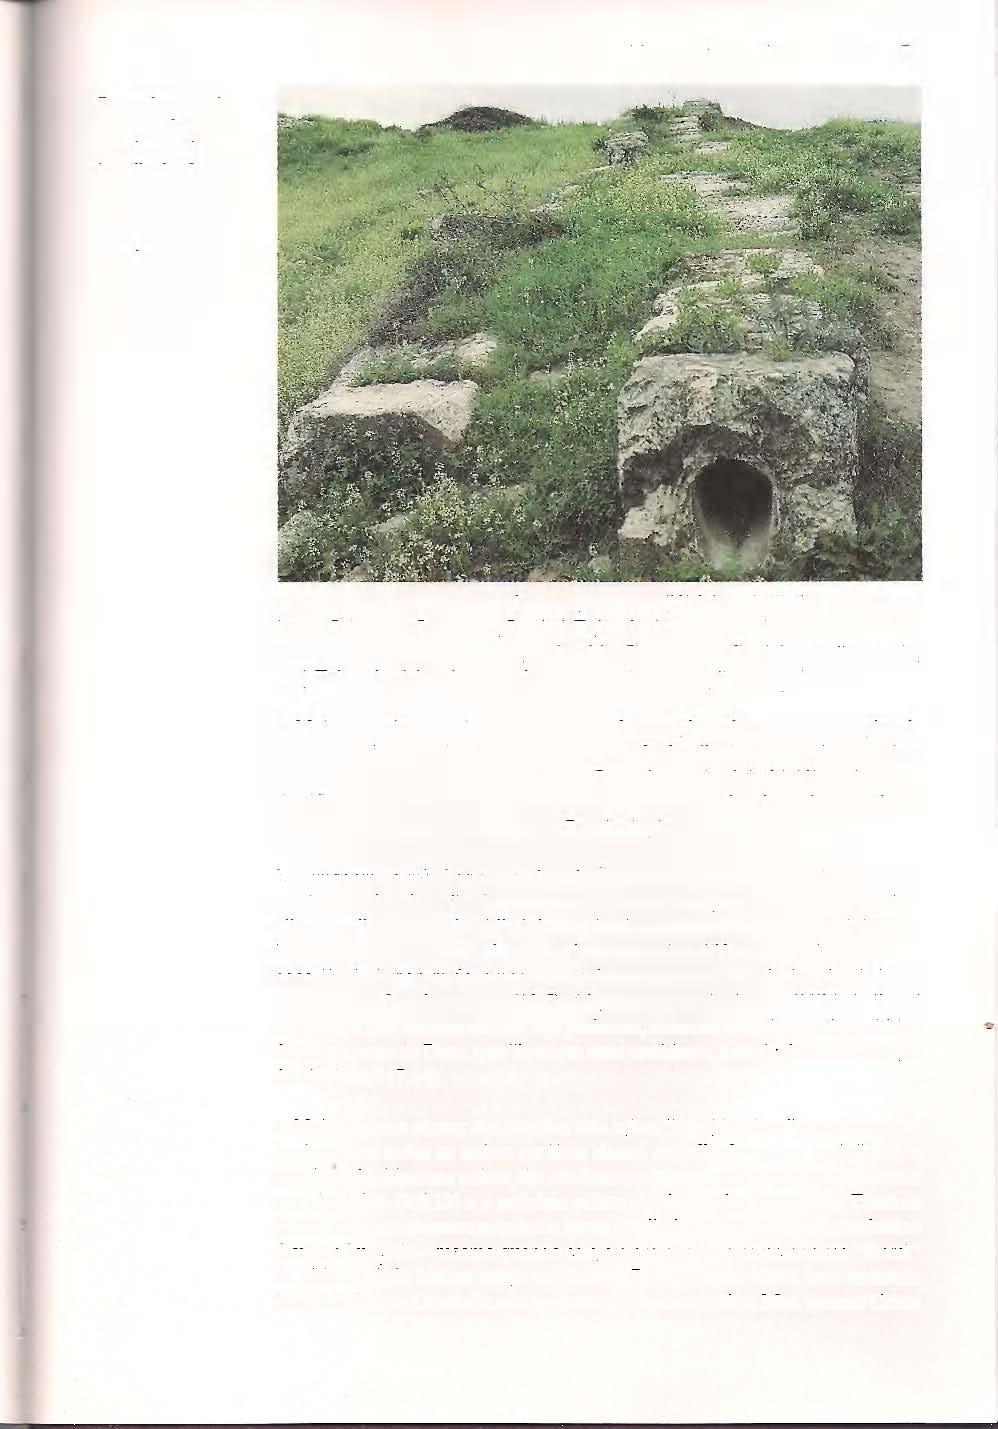 A MENSAGEM DE APOCALIPSE 153 Parte do aqueduto construído para suprira antiga Laodicéia. A água nesta área é rica em minerais; depósitos de calcário podem ser vistos nas paredes internas do aqueduto.